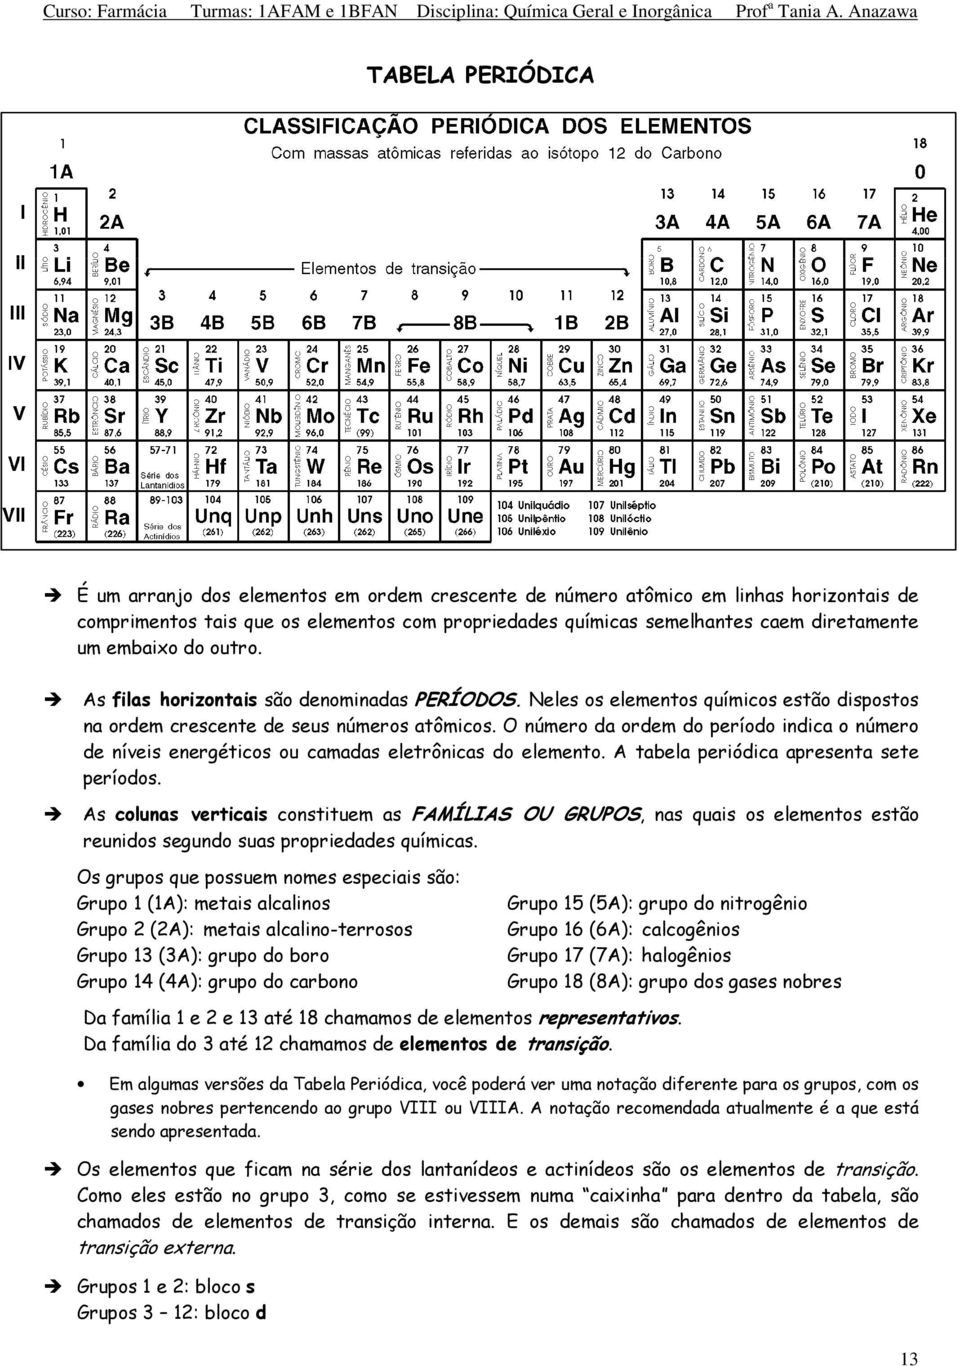 O número da ordem do período indica o número de níveis energéticos ou camadas eletrônicas do elemento. A tabela periódica apresenta sete períodos.